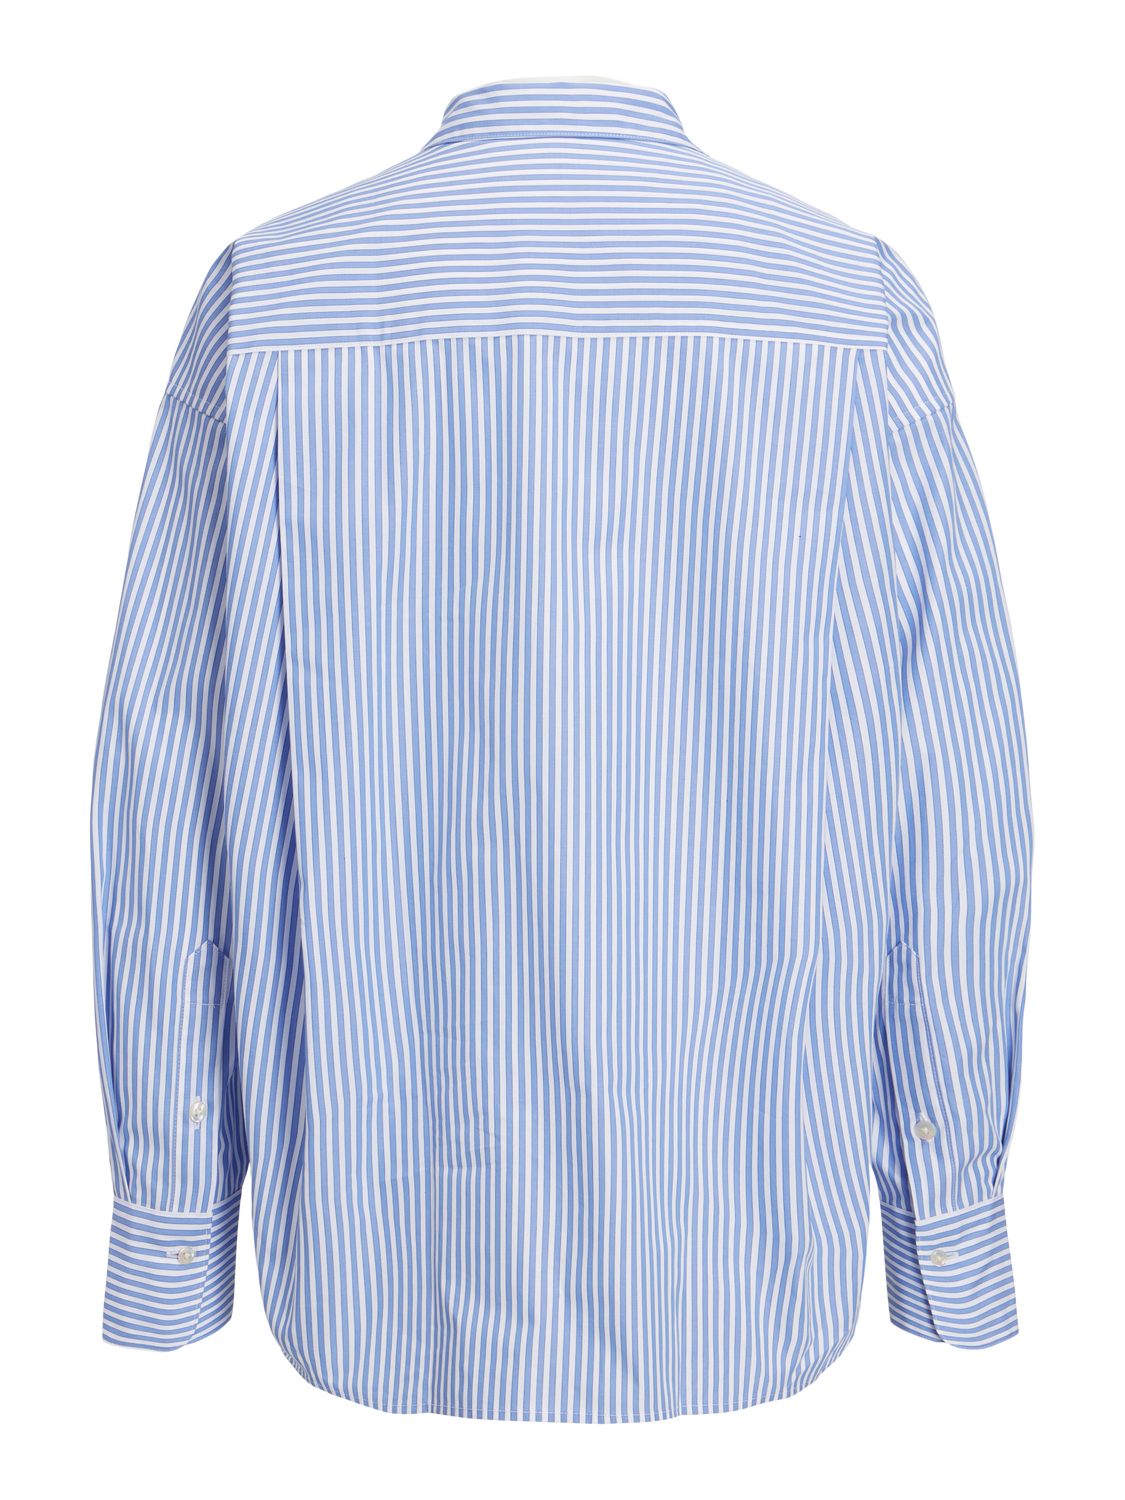 JJXX JXJAMIE Poplin shirt -Navy Blazer - 12200353